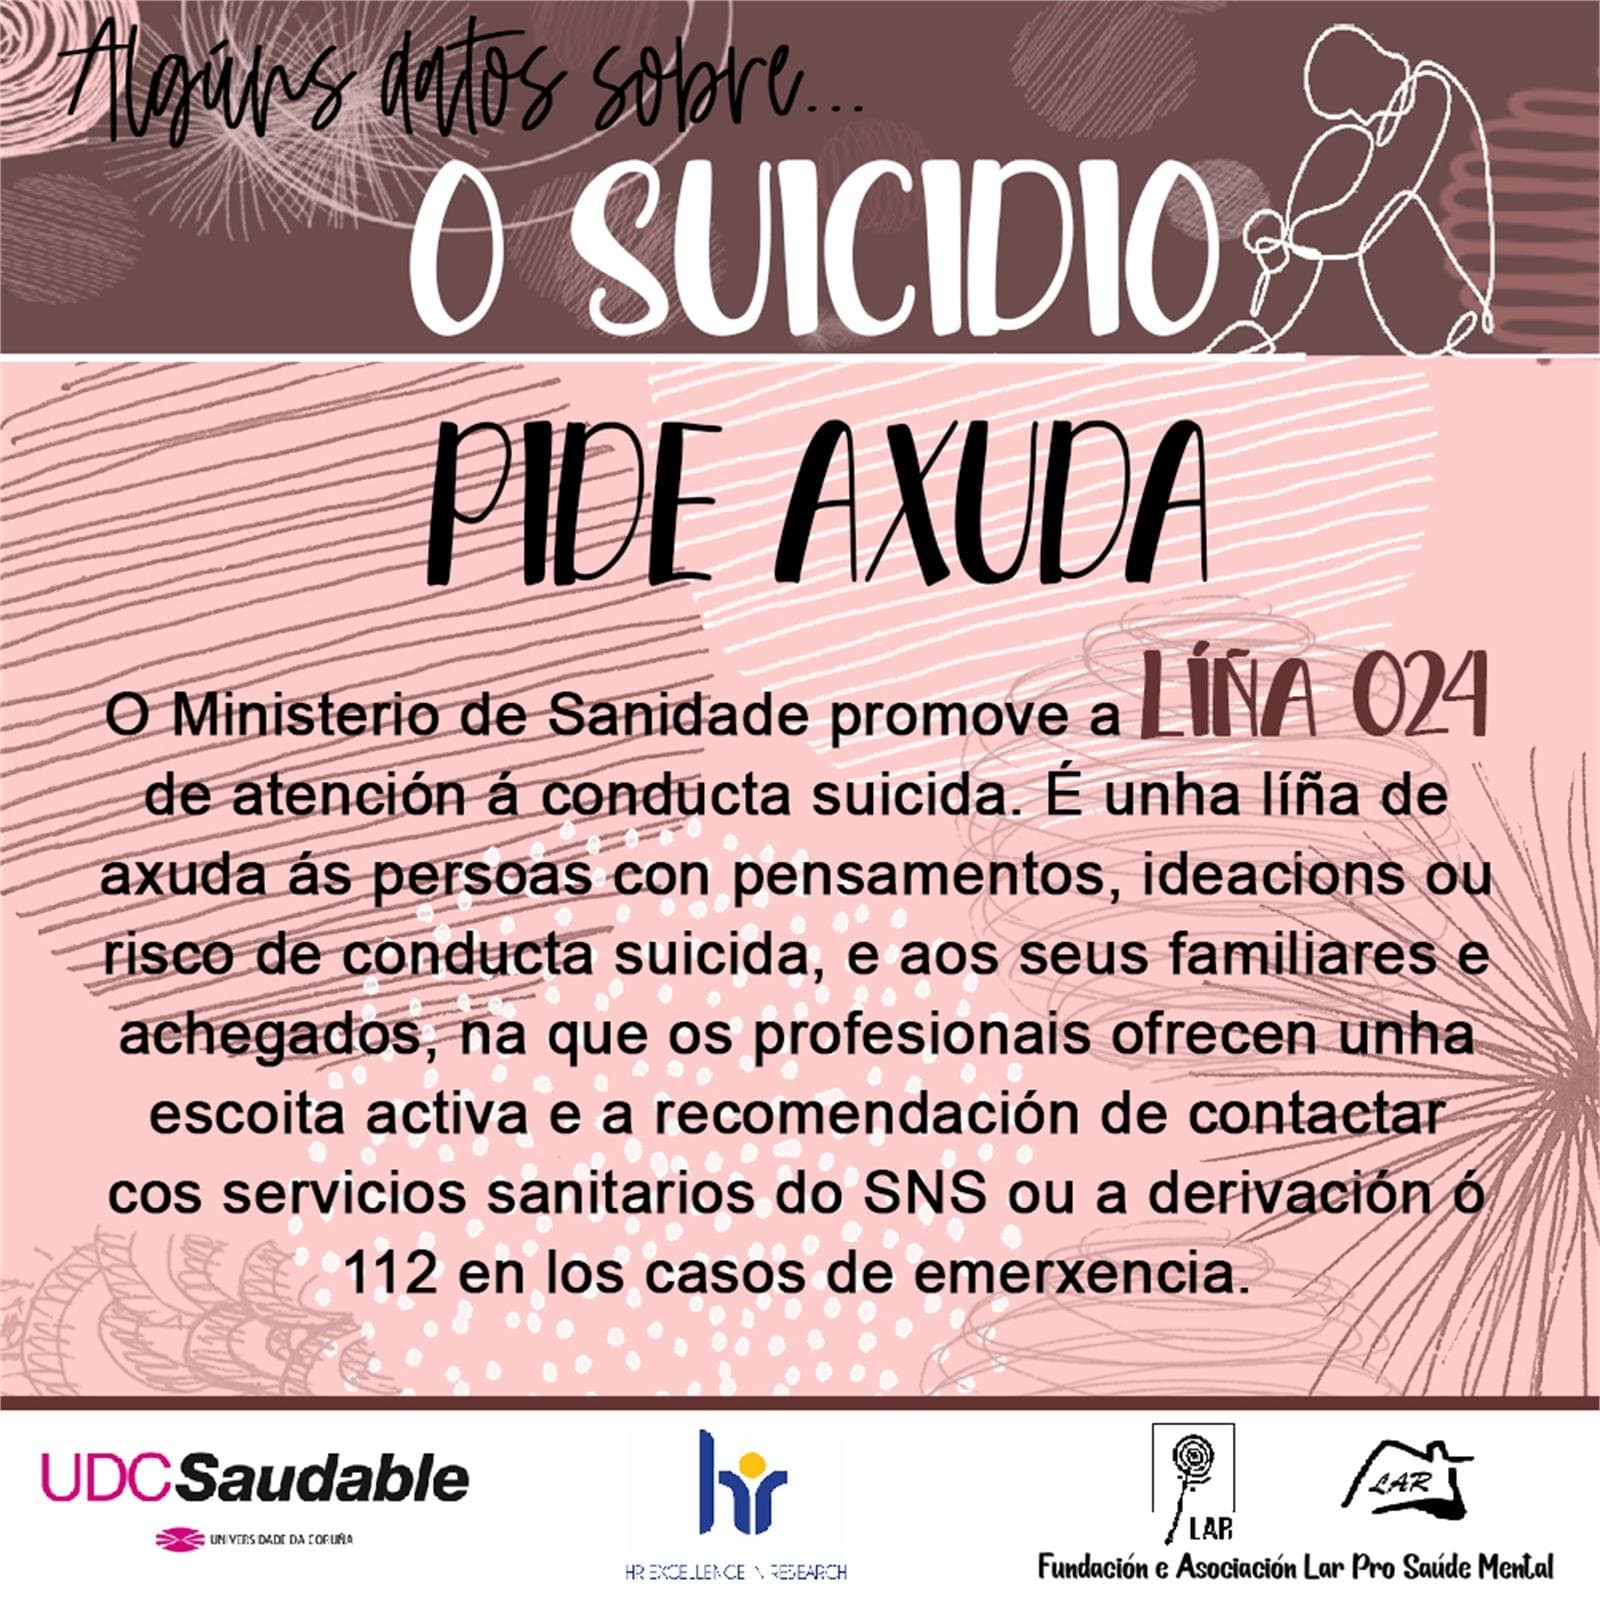 Algunos Datos sobre Suicidio... - LAR Pro Salud Mental - Imagen 8